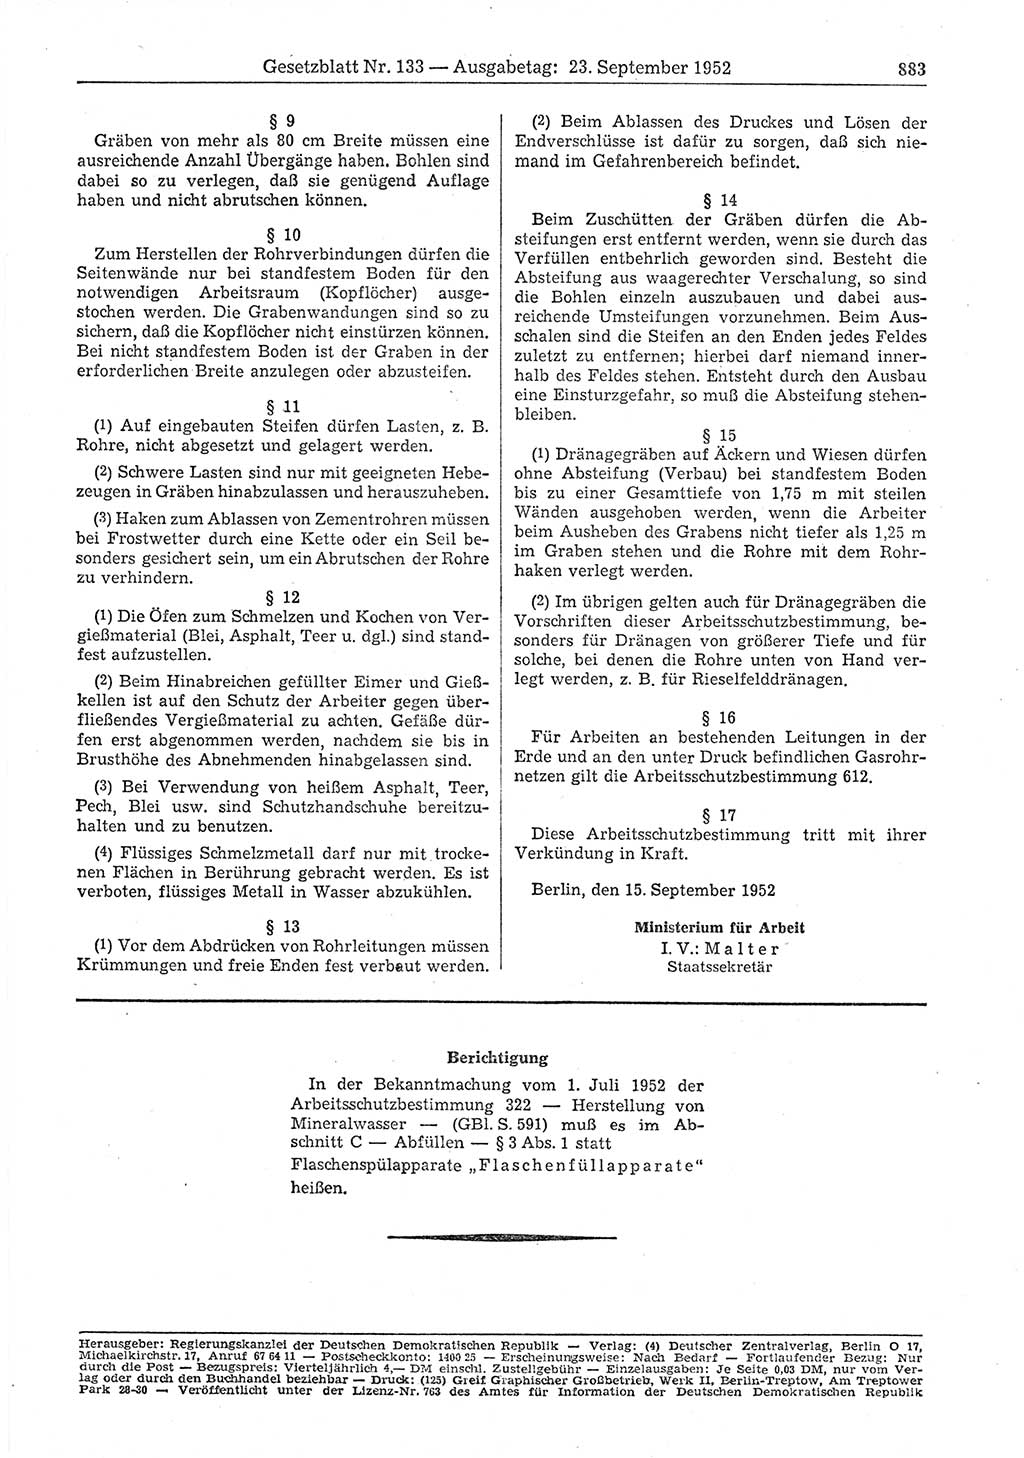 Gesetzblatt (GBl.) der Deutschen Demokratischen Republik (DDR) 1952, Seite 883 (GBl. DDR 1952, S. 883)